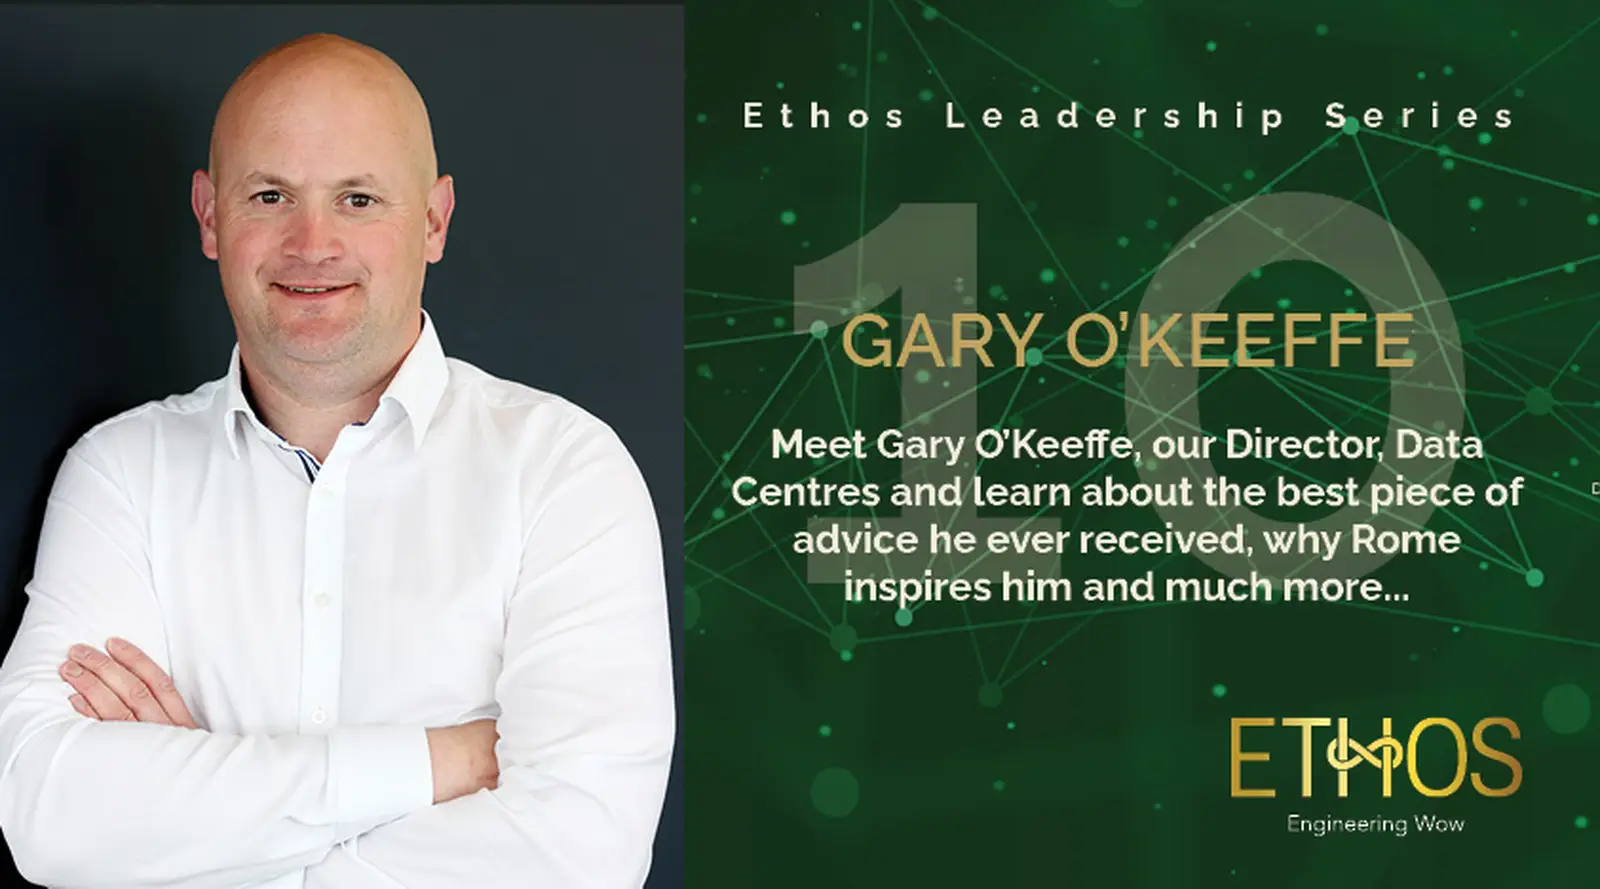 Meet Gary O'Keeffe - Director, Data Centre